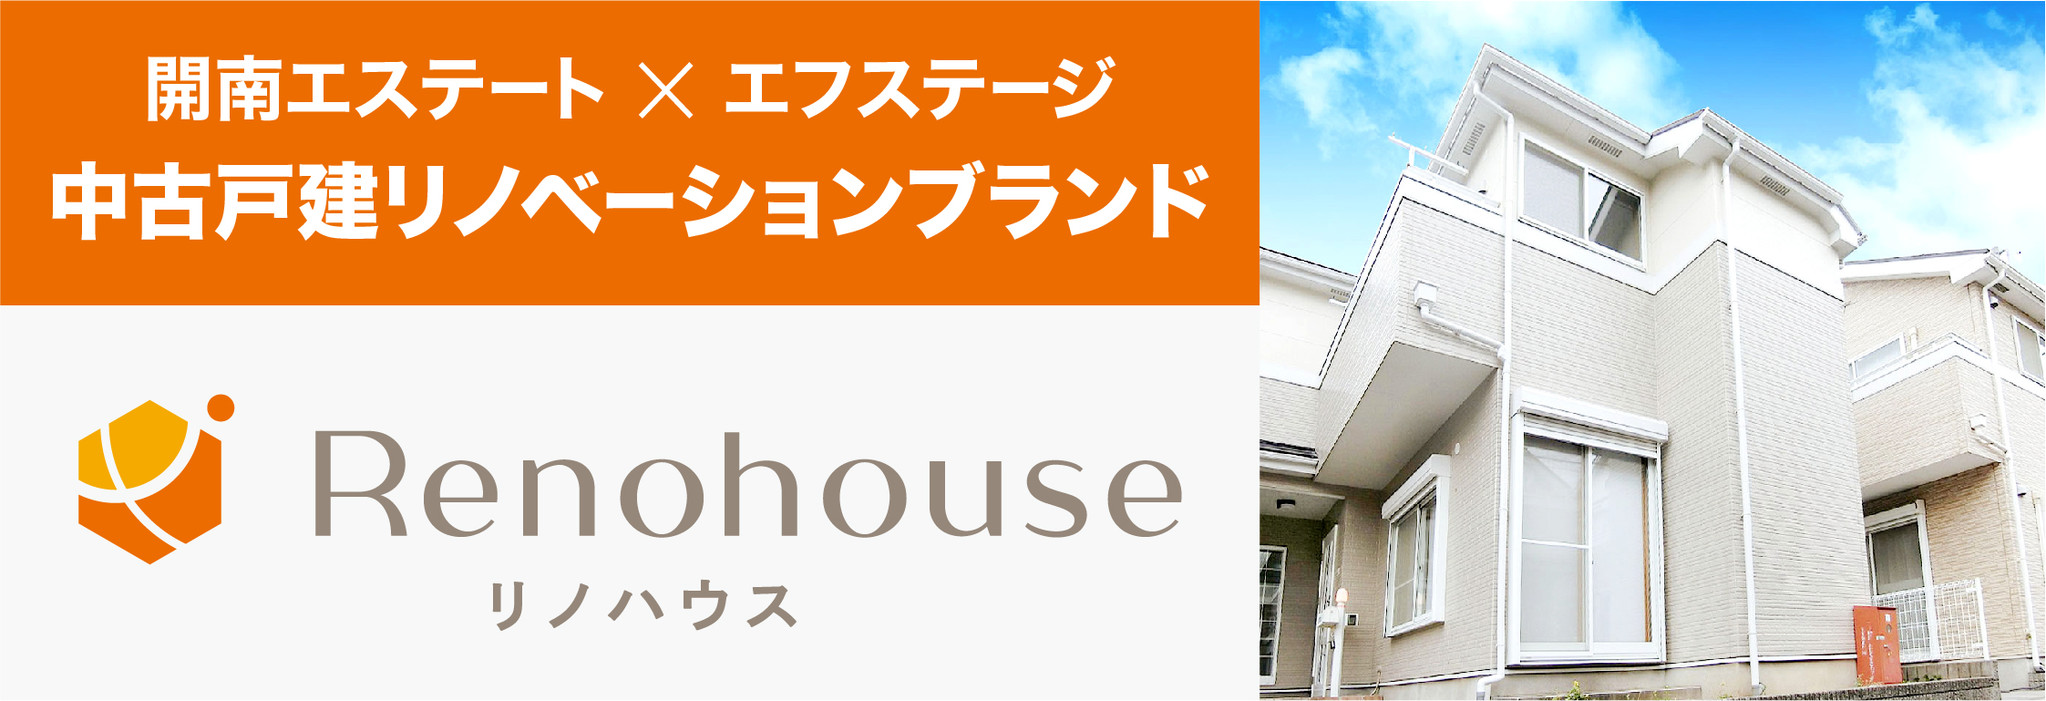 中古戸建リノベーションプロジェクト Renohouse リノハウス 始動 株式会社エフステージのプレスリリース